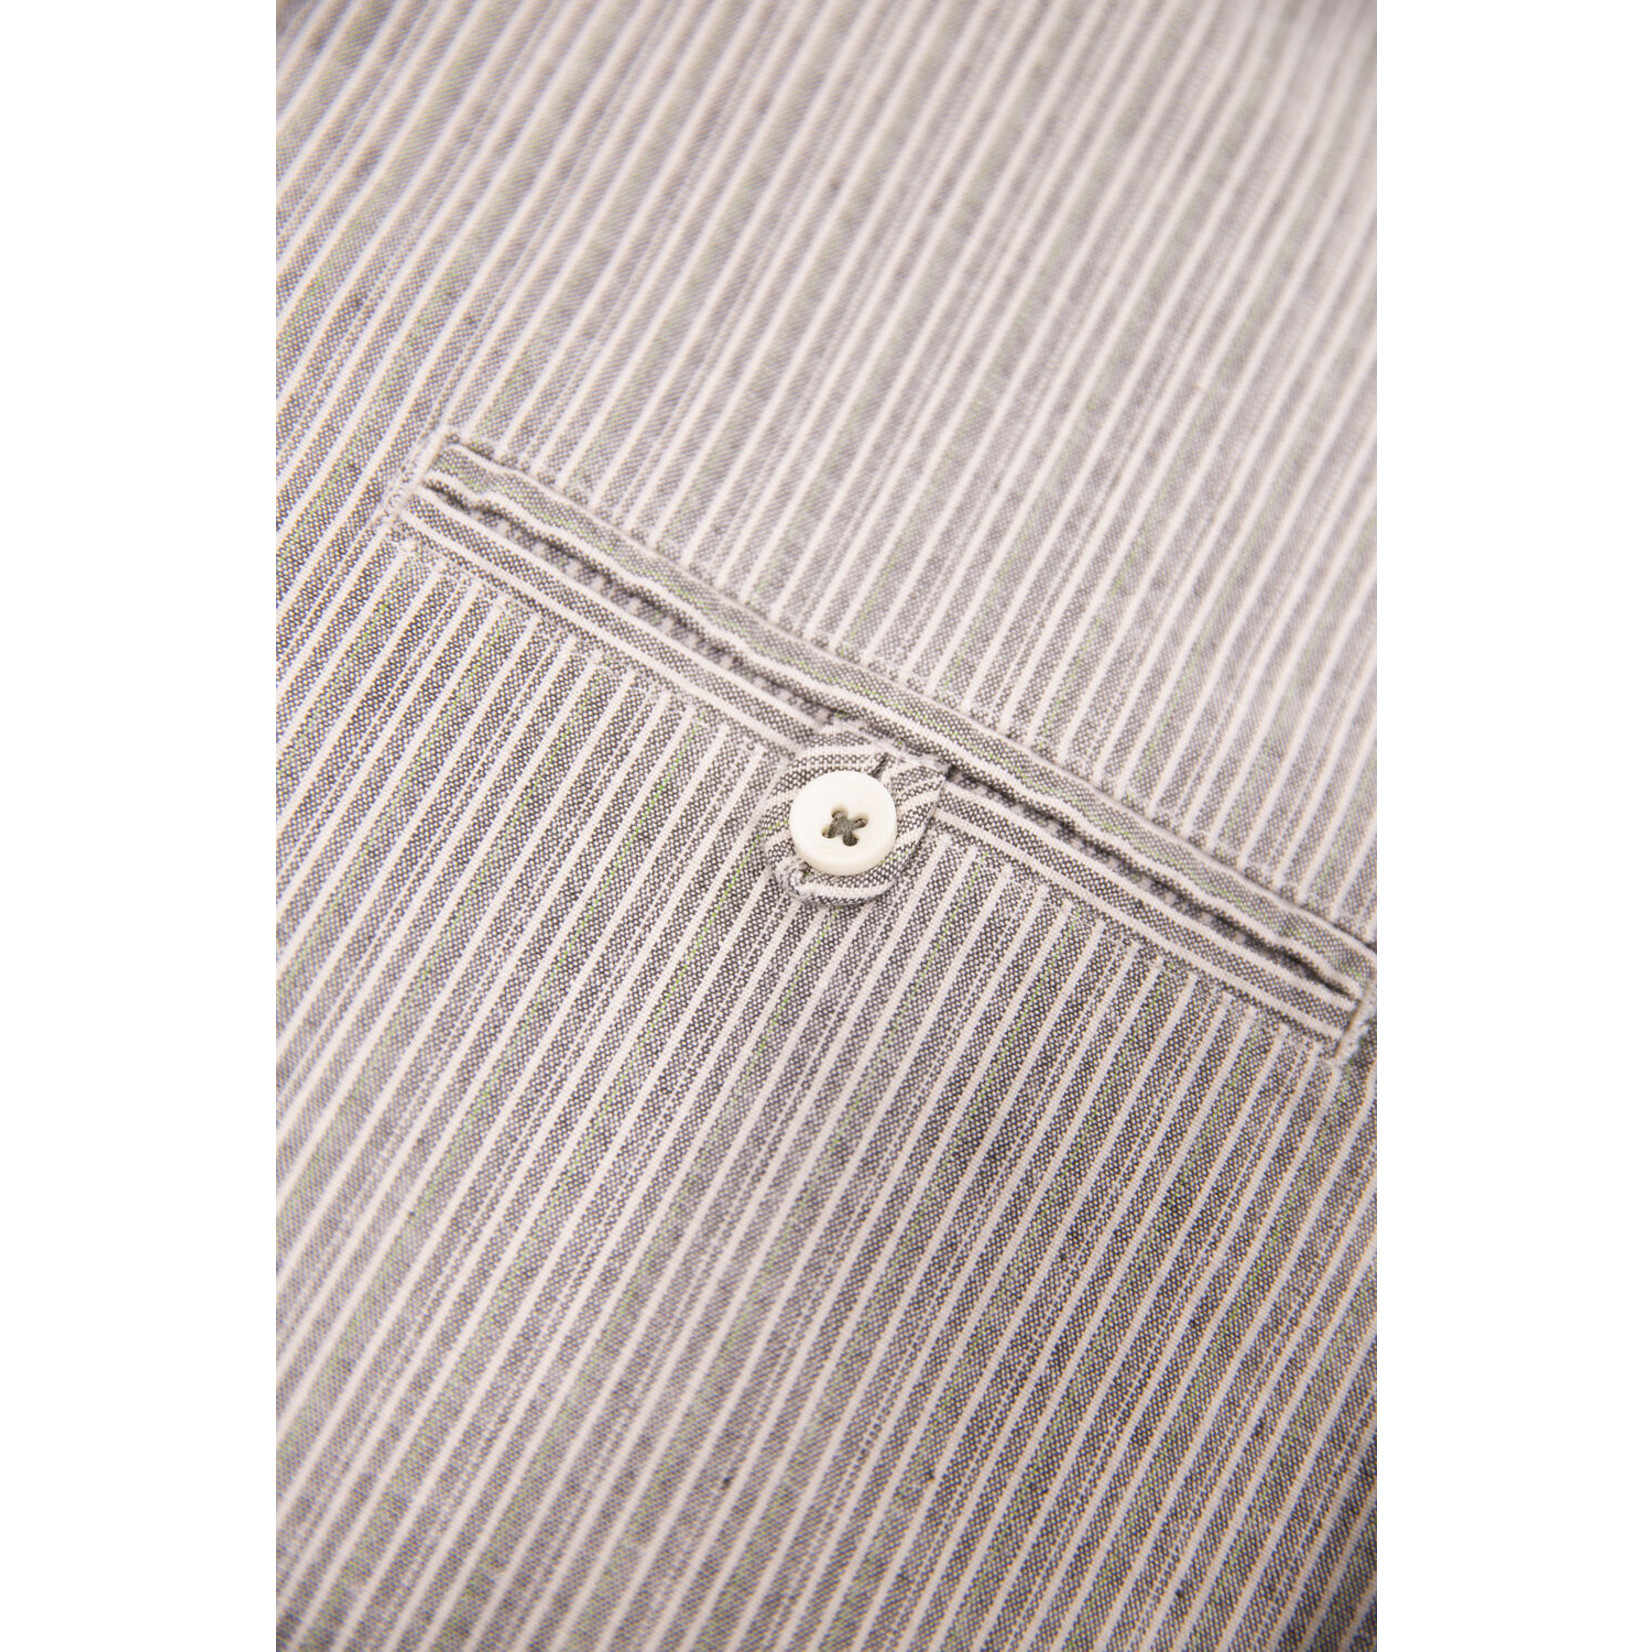 Garcia Garcia C11087 Striped Pocket Short Sleeve Shirt 3942 Deep Army